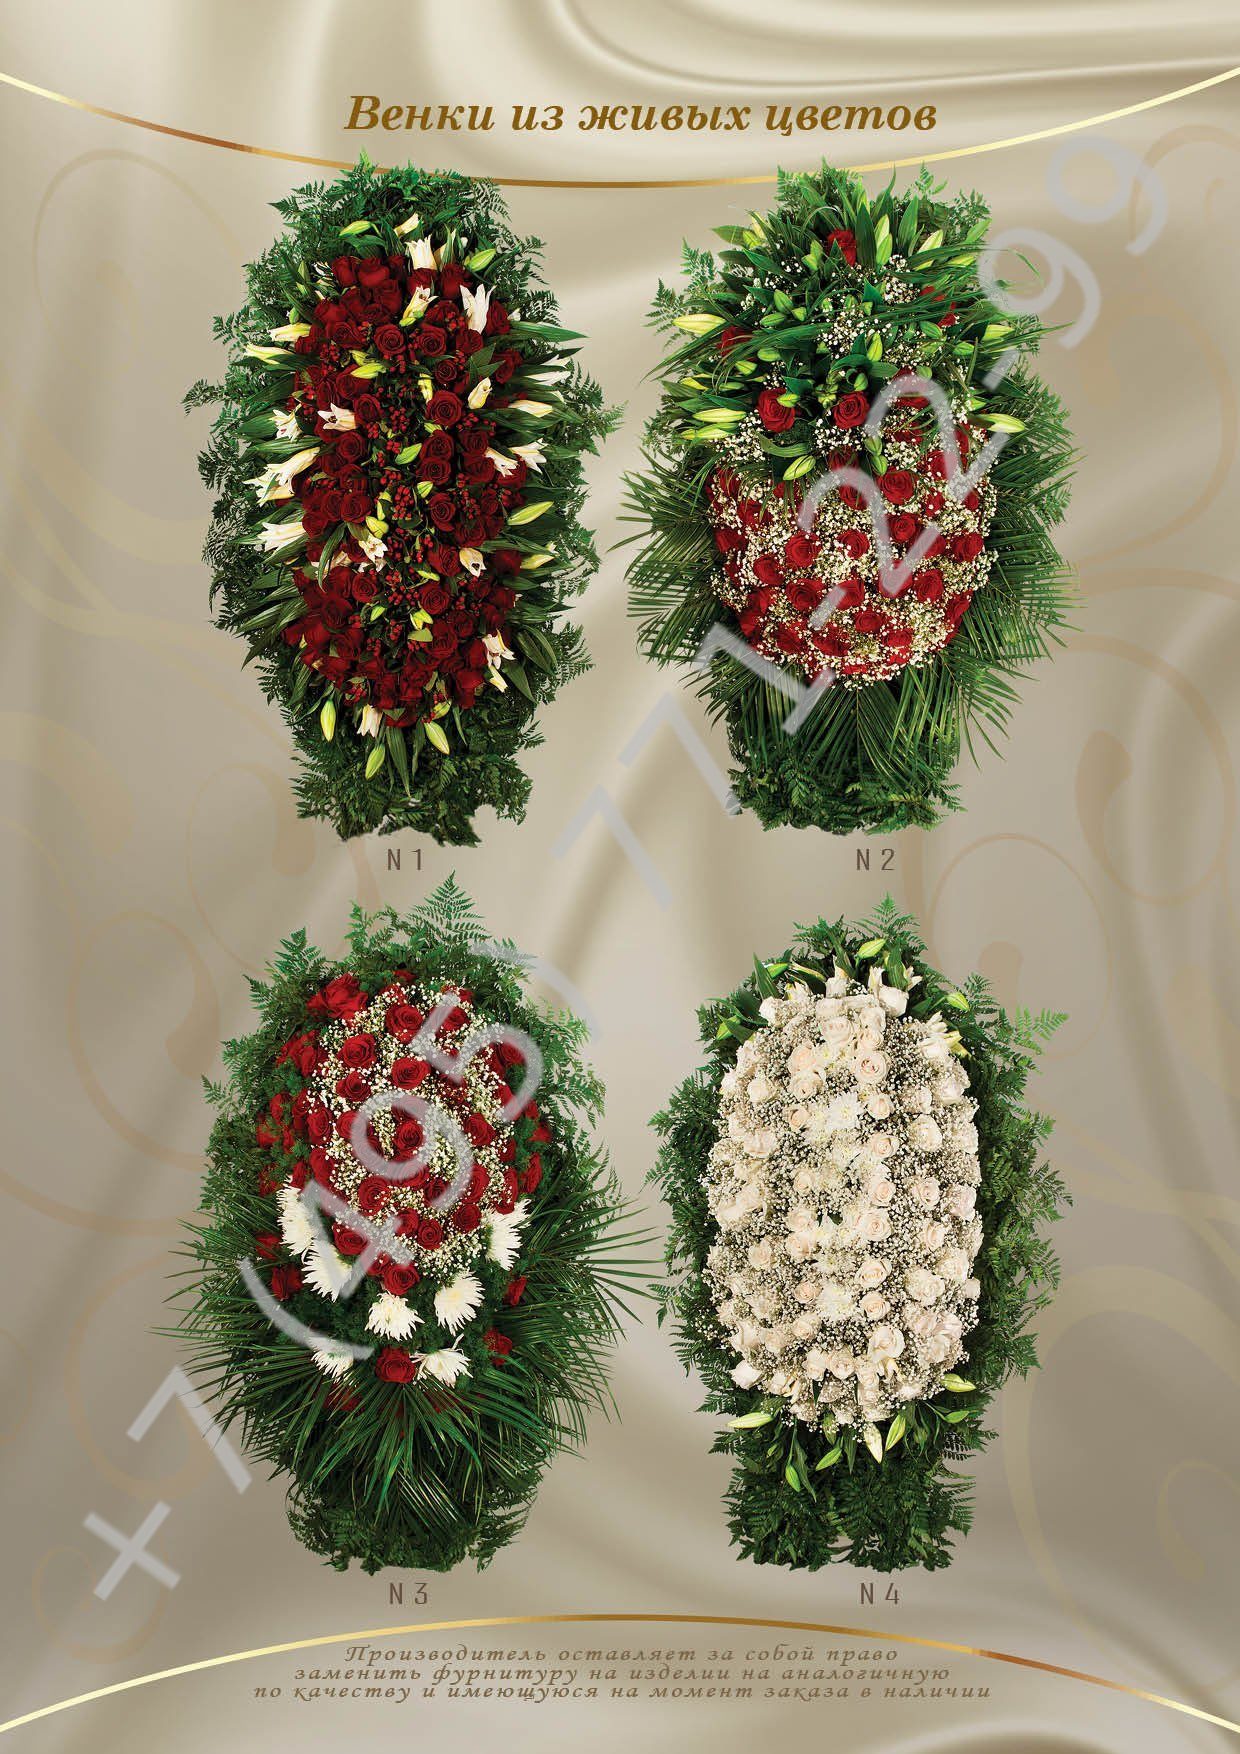 Венки из живых цветов - похоронное предприятие "Ритуал"